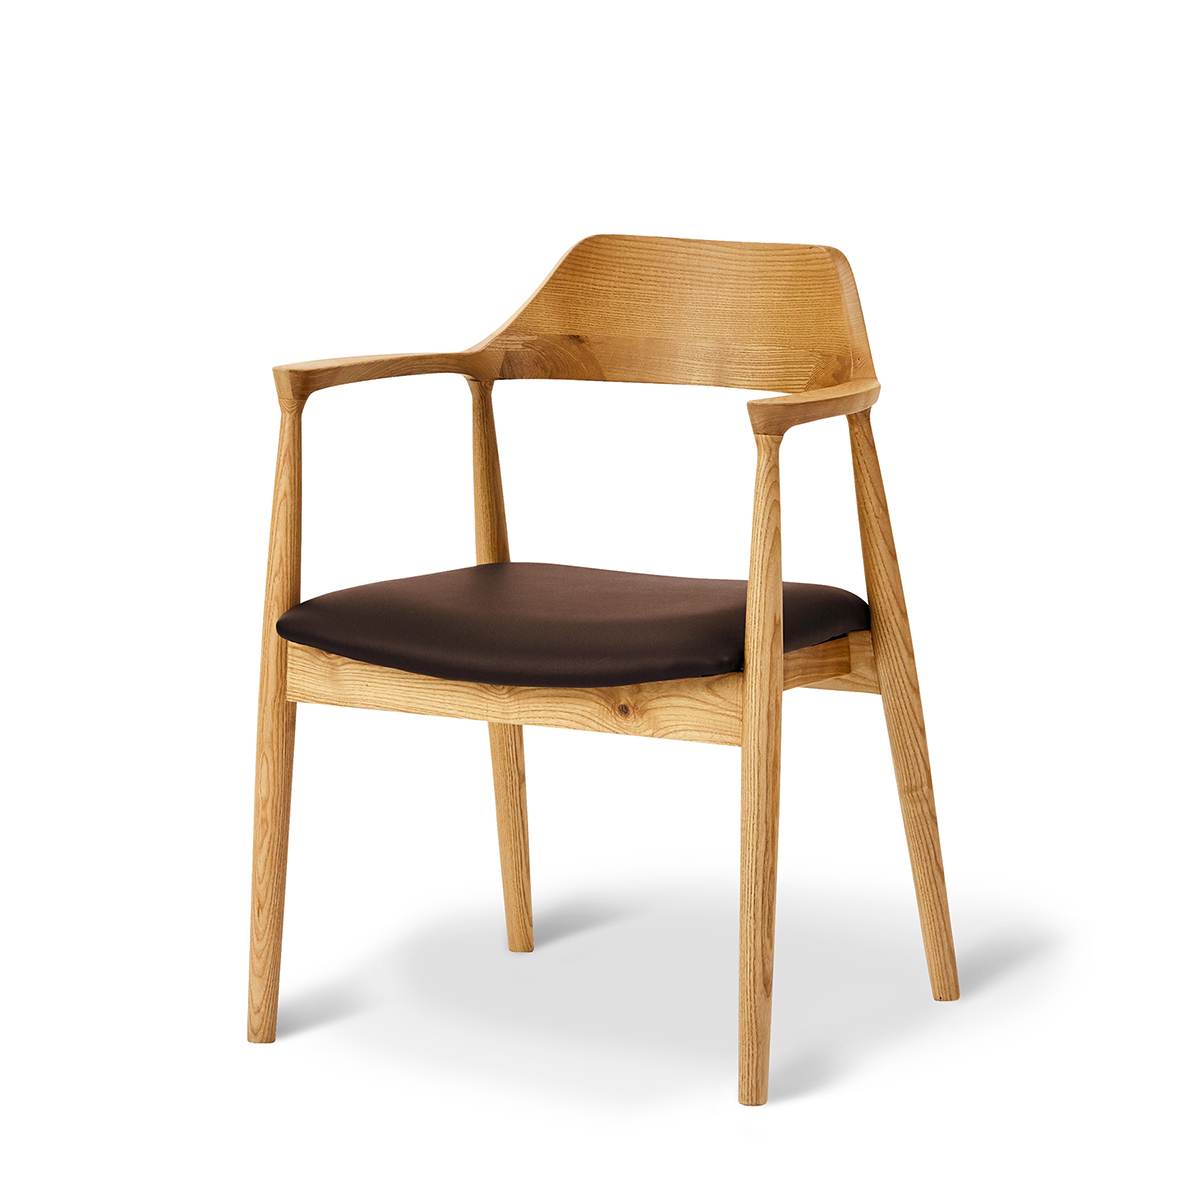 独特の上品 良い雰囲気 木製 ダイニングチェア 椅子 イス 